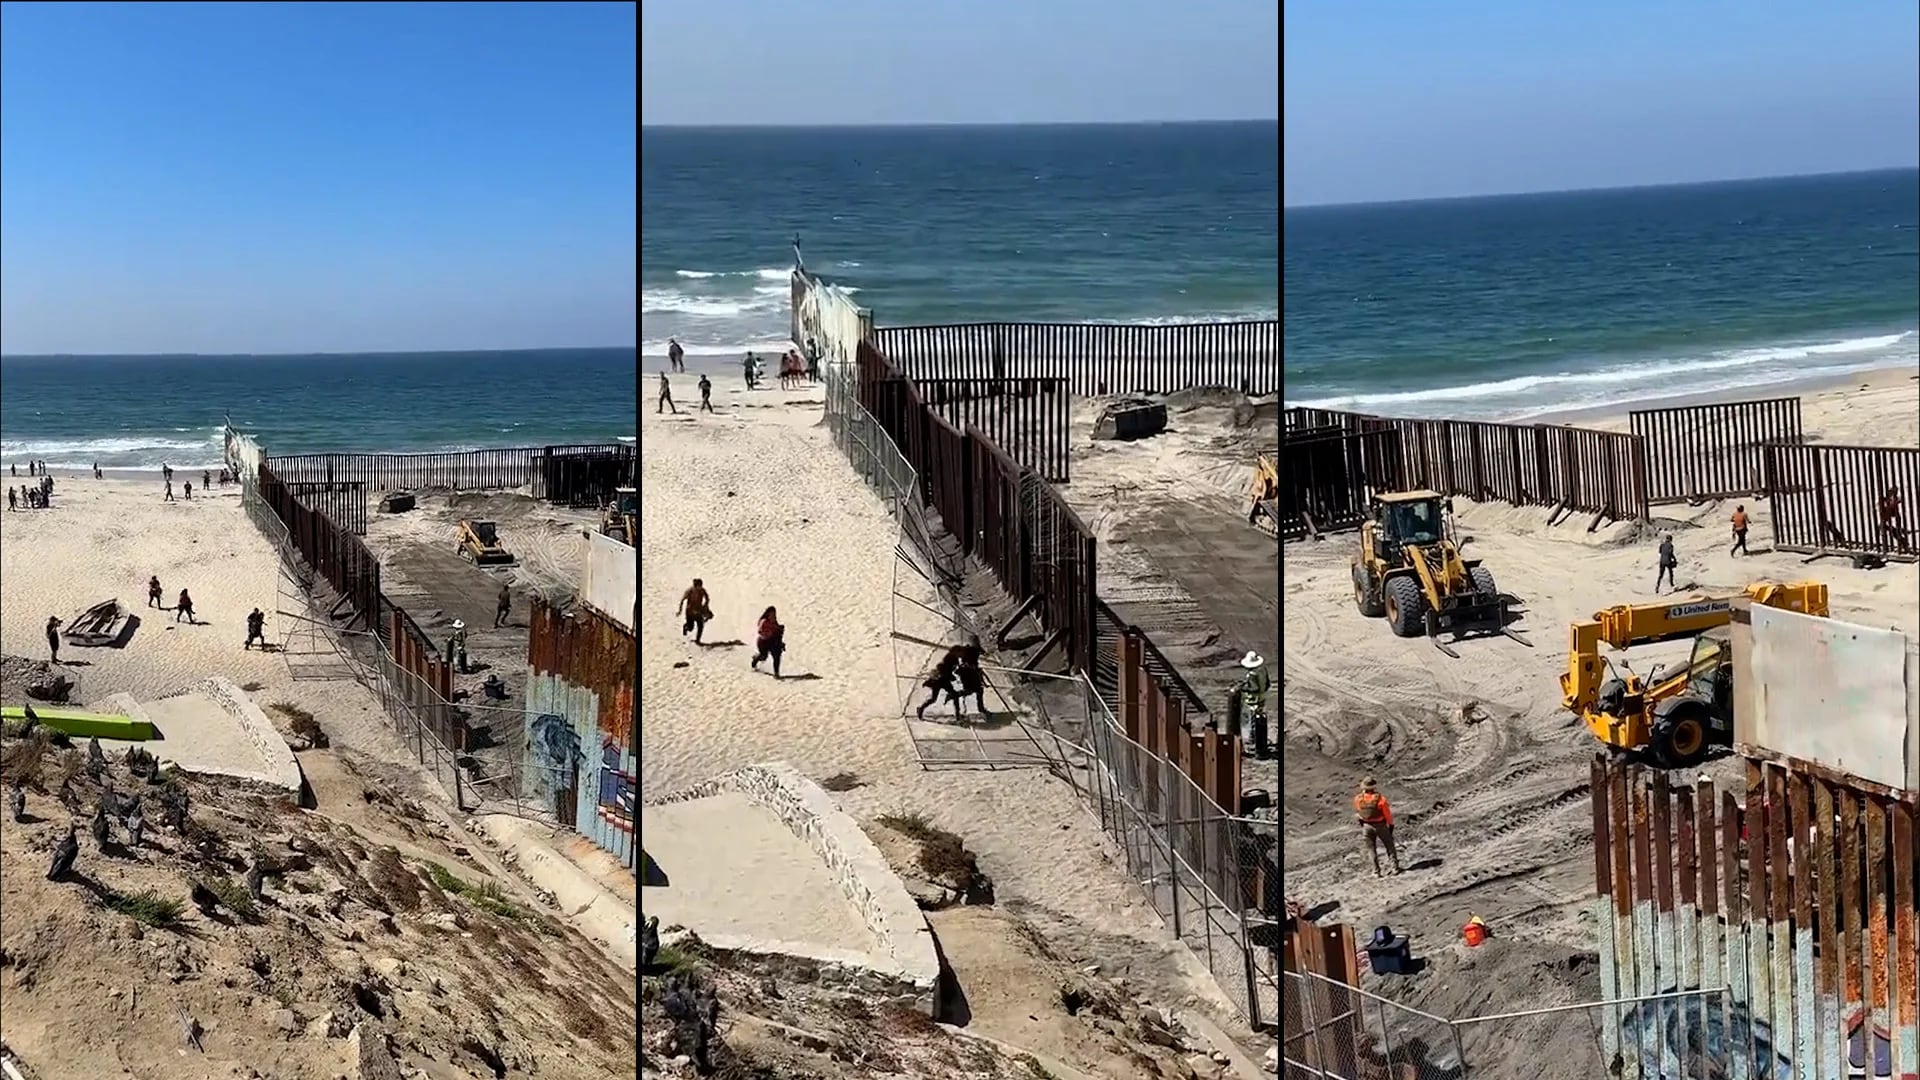 en redes sociales comenzó a circular un video en el que se ve el momento en el que los migrantes atraviesan el muro a Estados Unidos